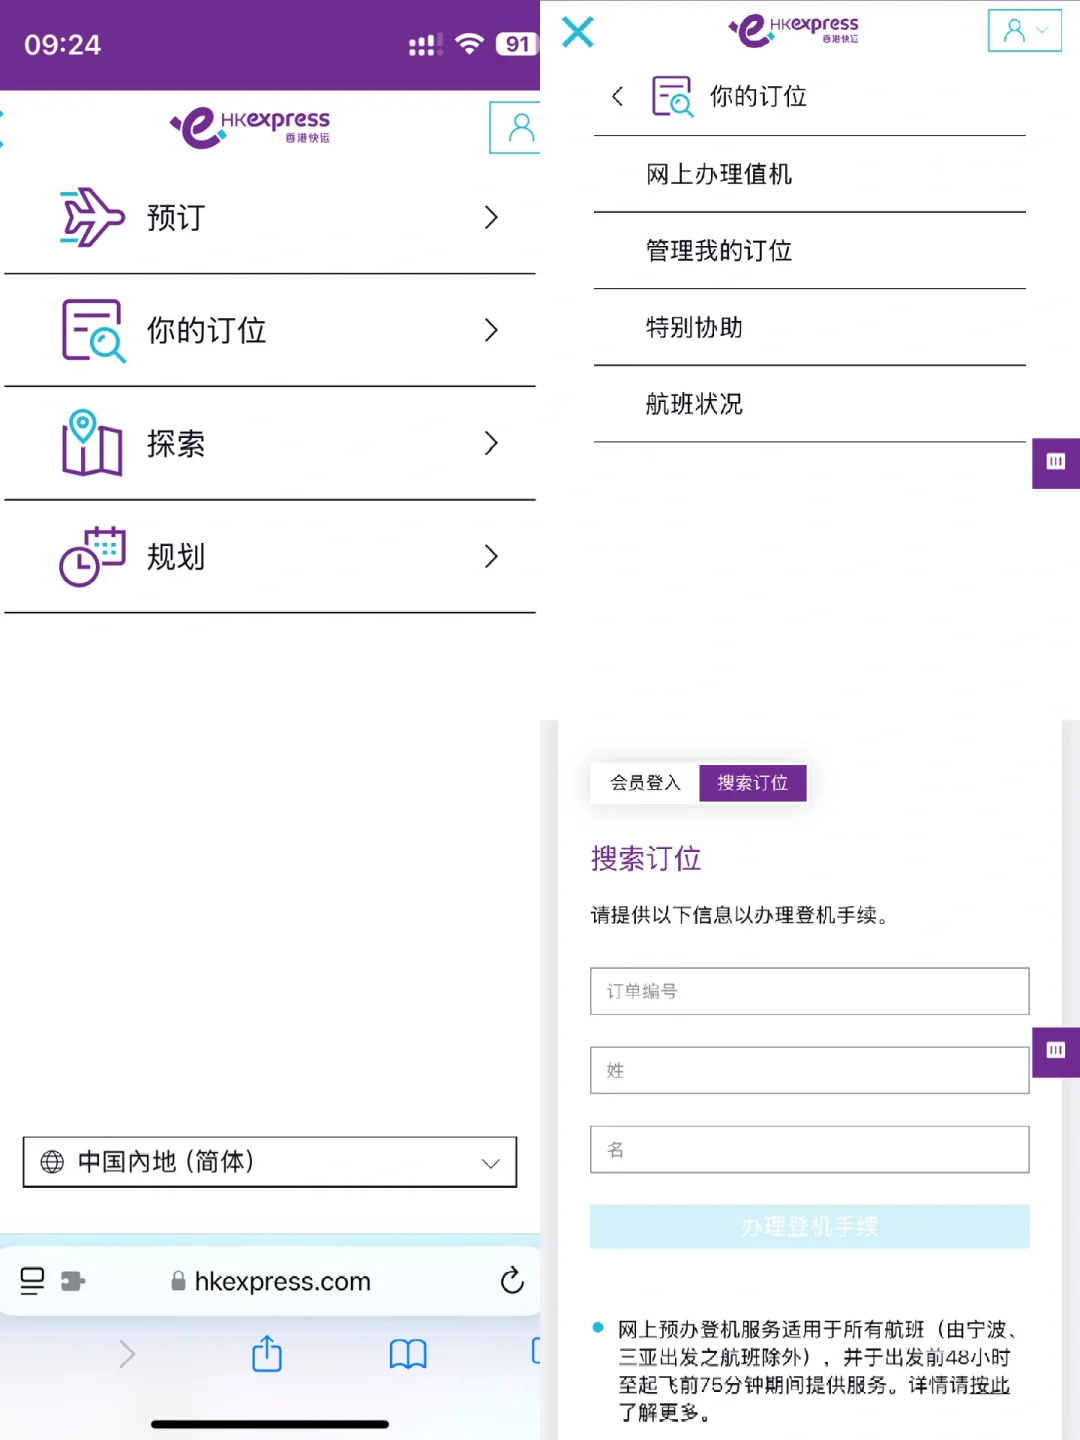 香港快运的app不能网上办理值机怎么办